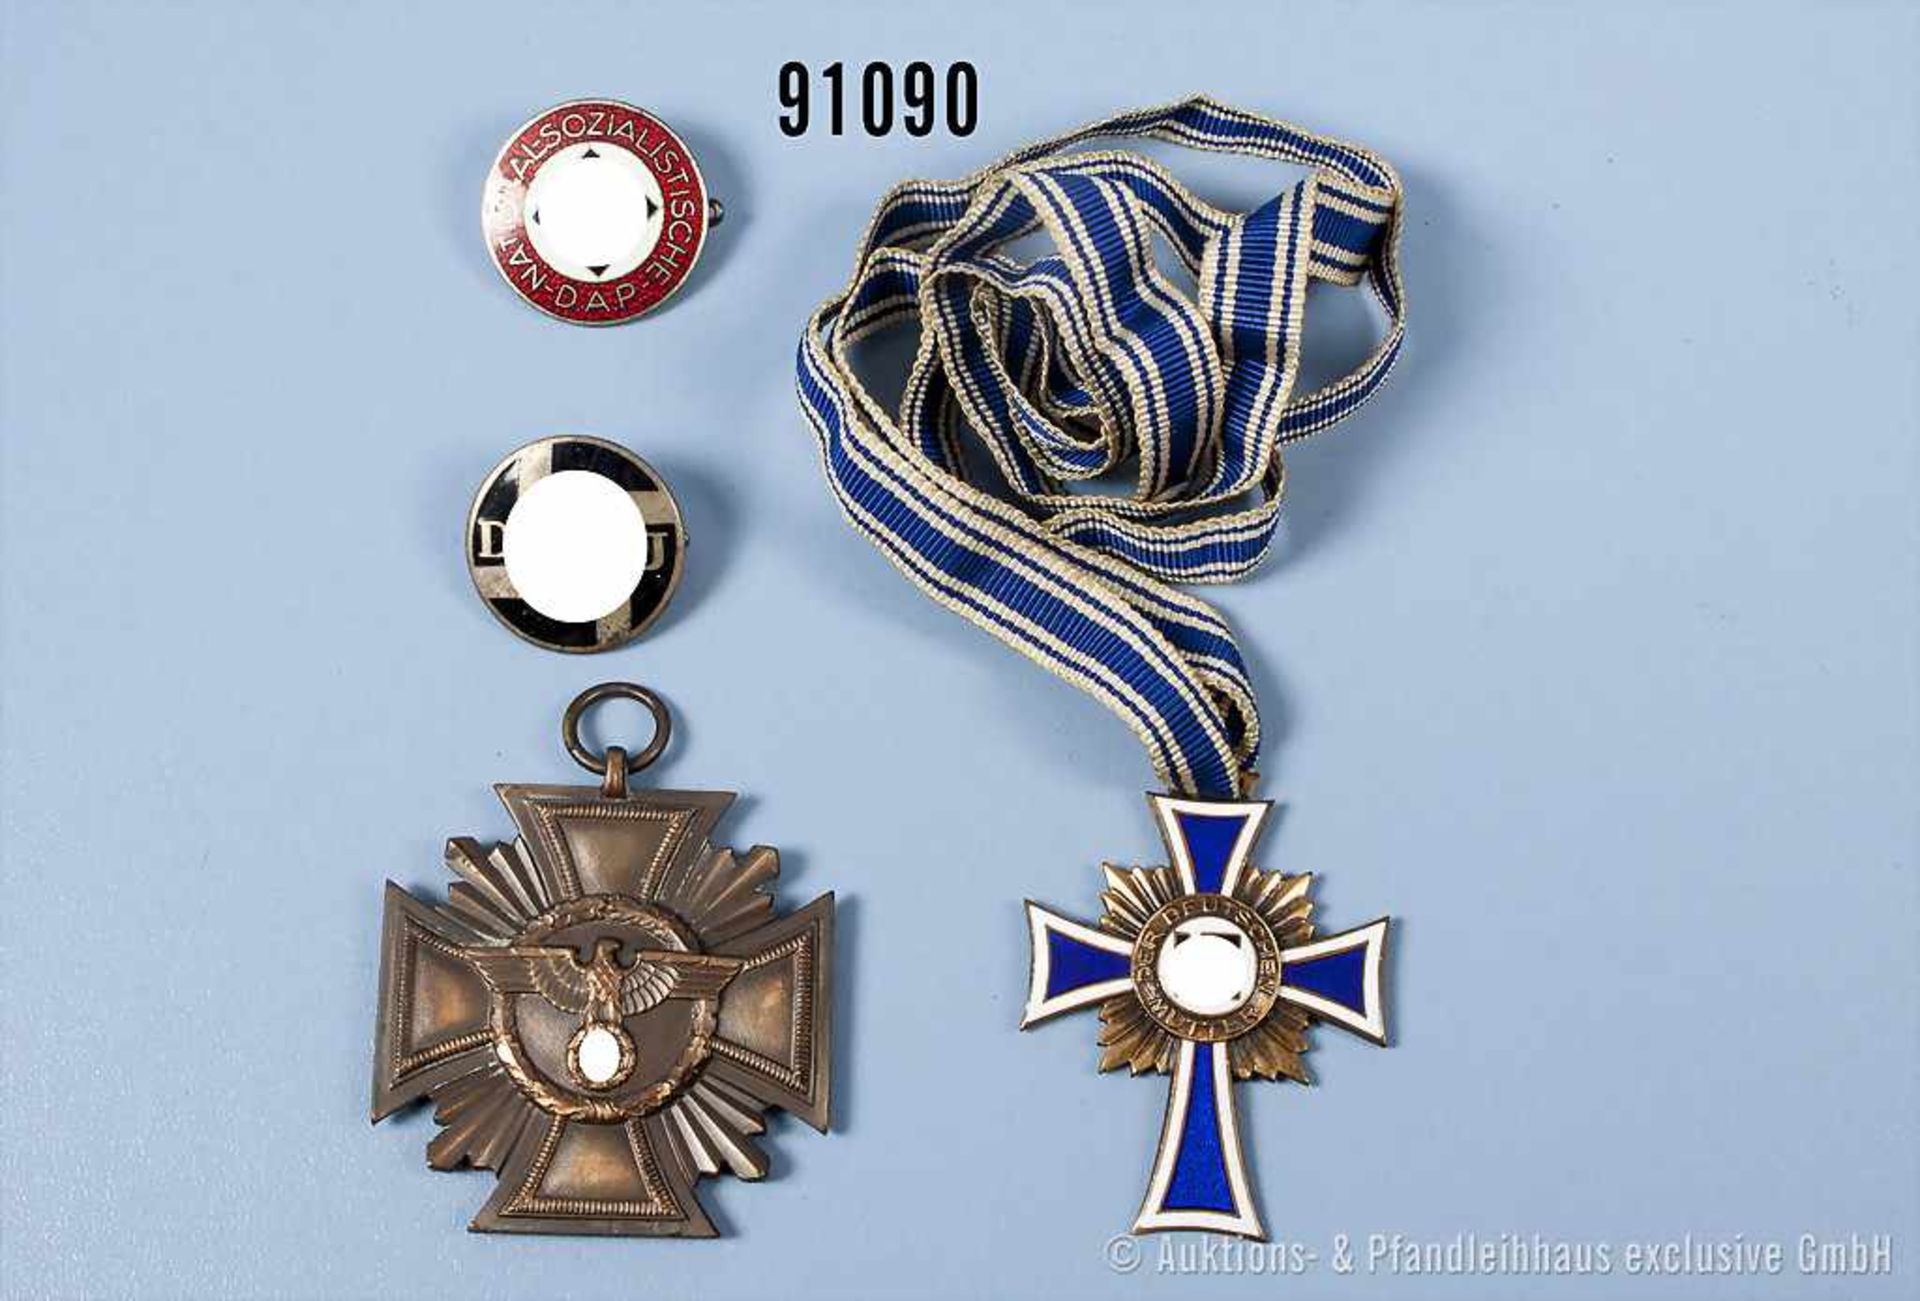 Konv. NSDAP-Dienstauszeichnung in Bronze, Hersteller "7" im Bandring, Mutterkreuz in Bronze sowie